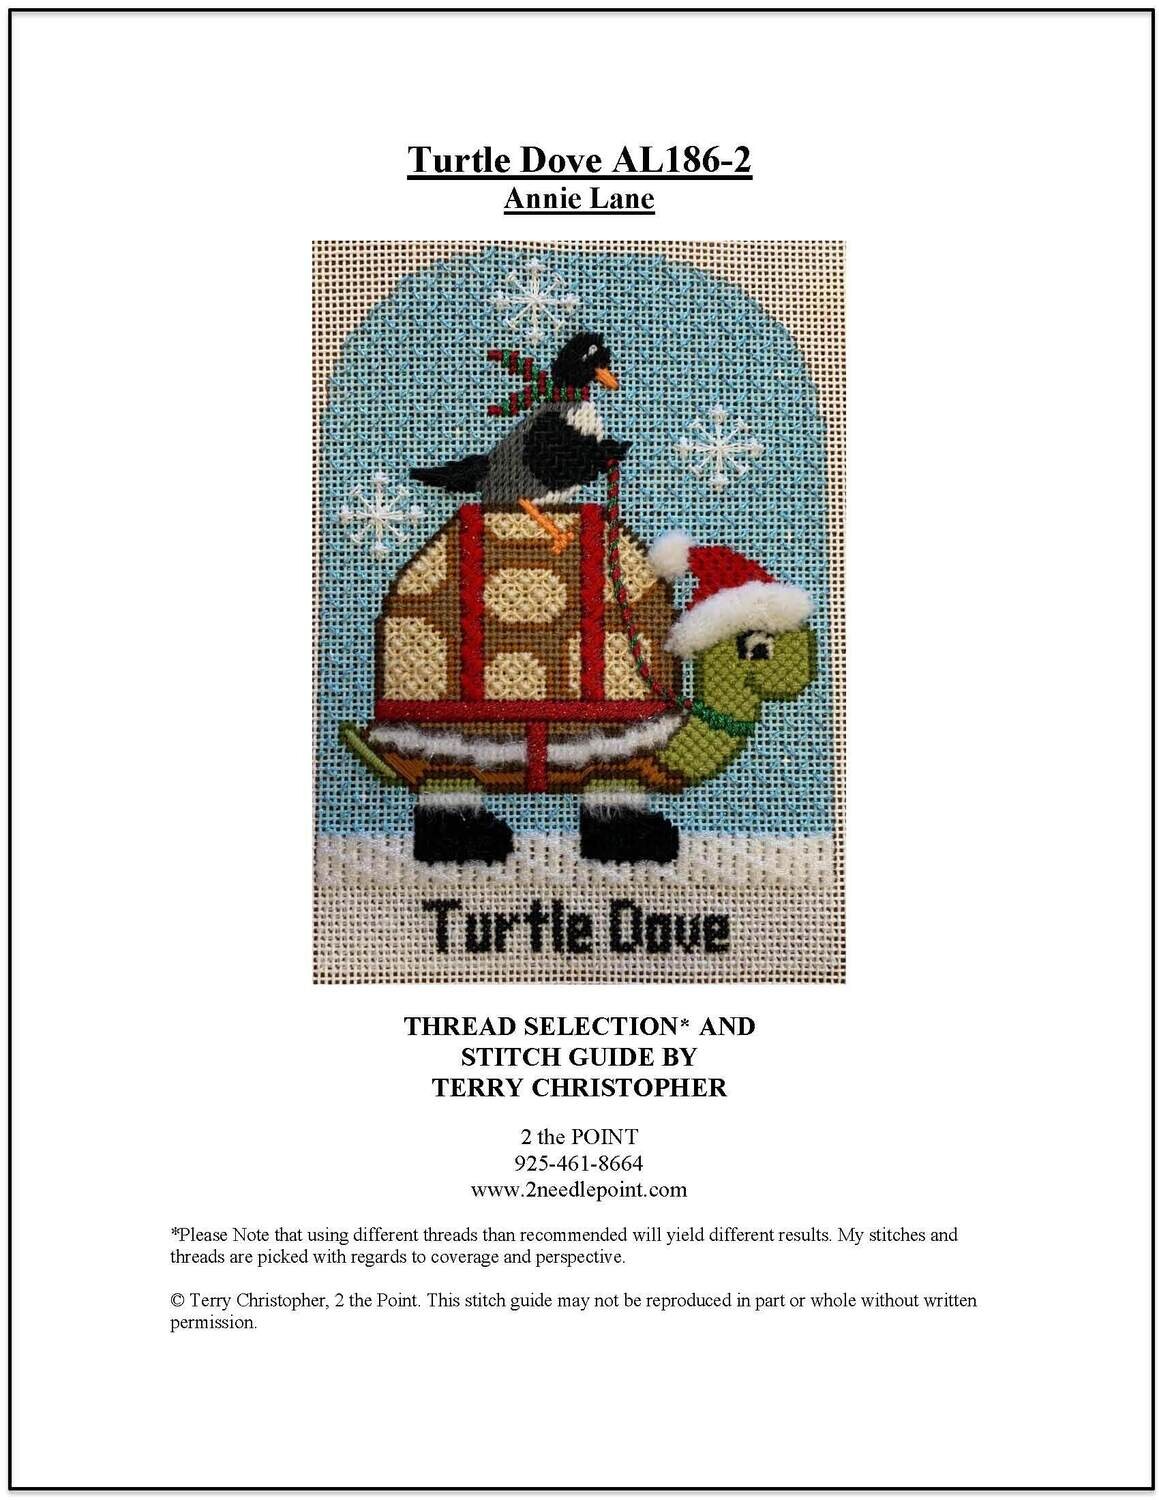 Annie Lane, Day 2 Turtle Dove AL0186-02